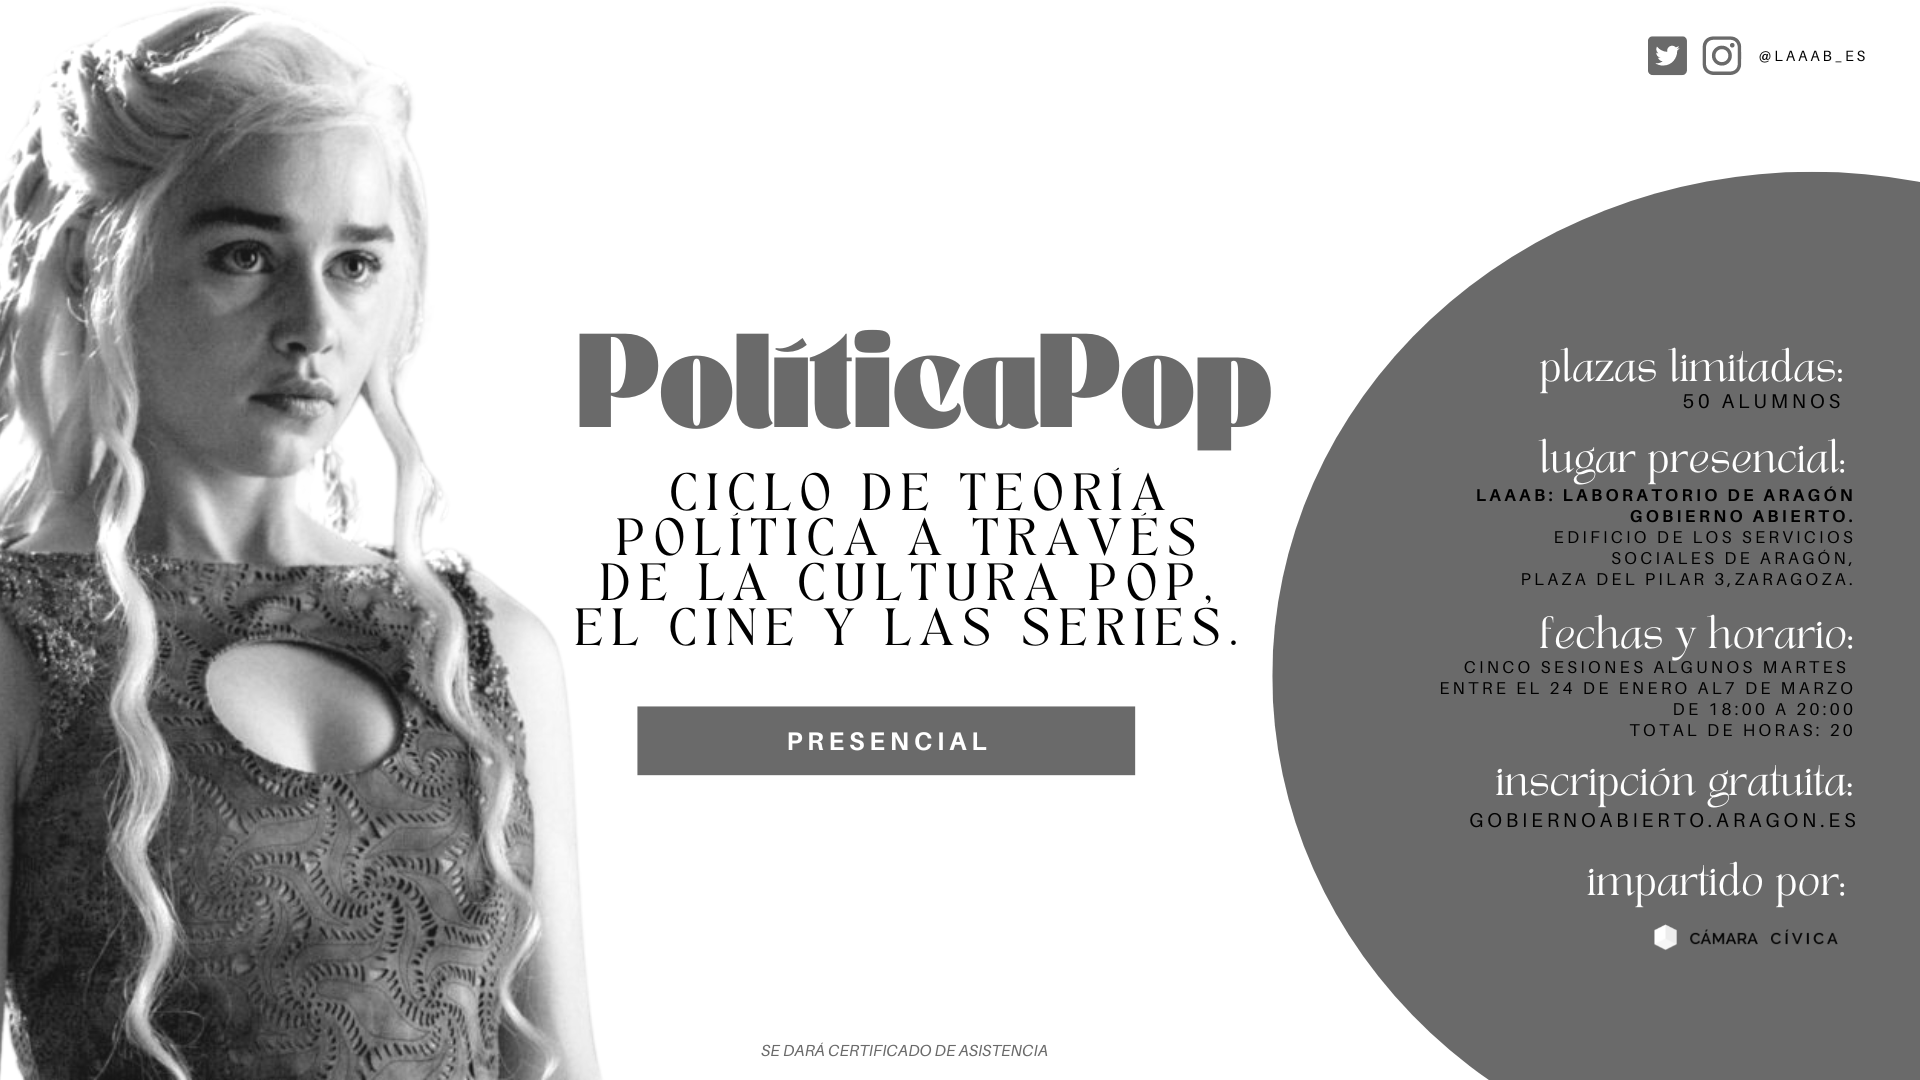 politicapop 2